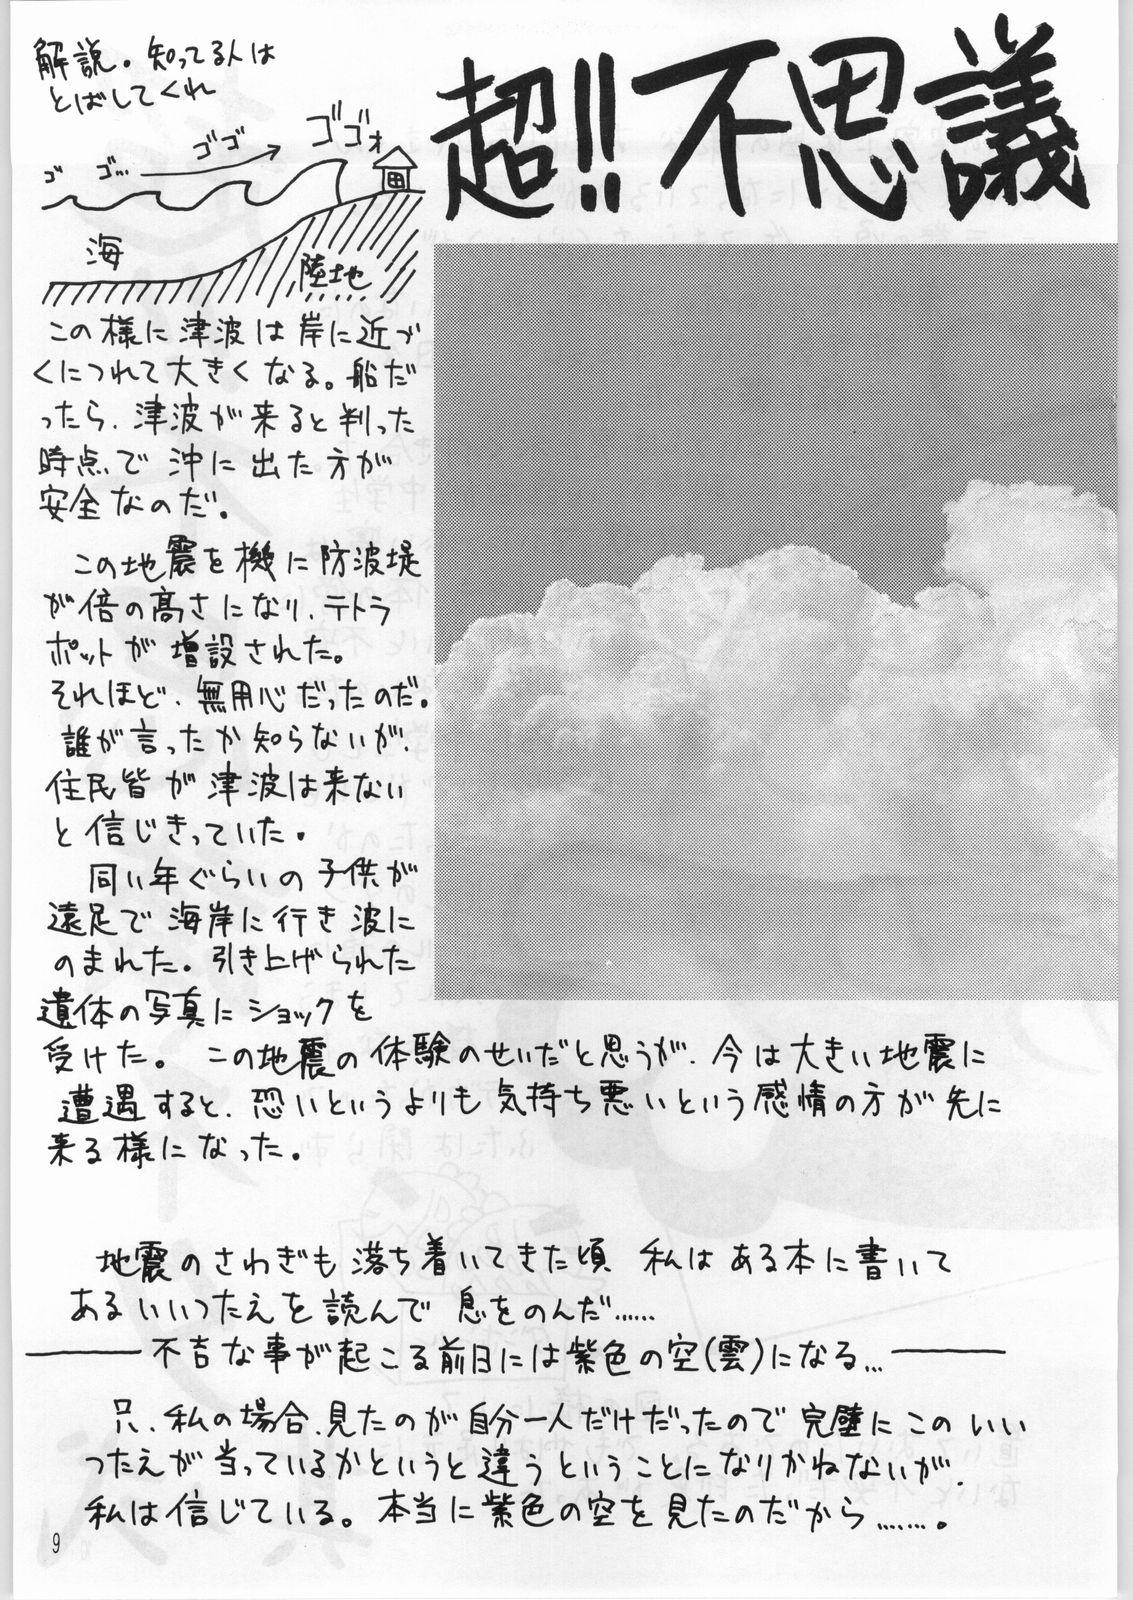 Gordibuena Hentai Pic Casa - Page 8